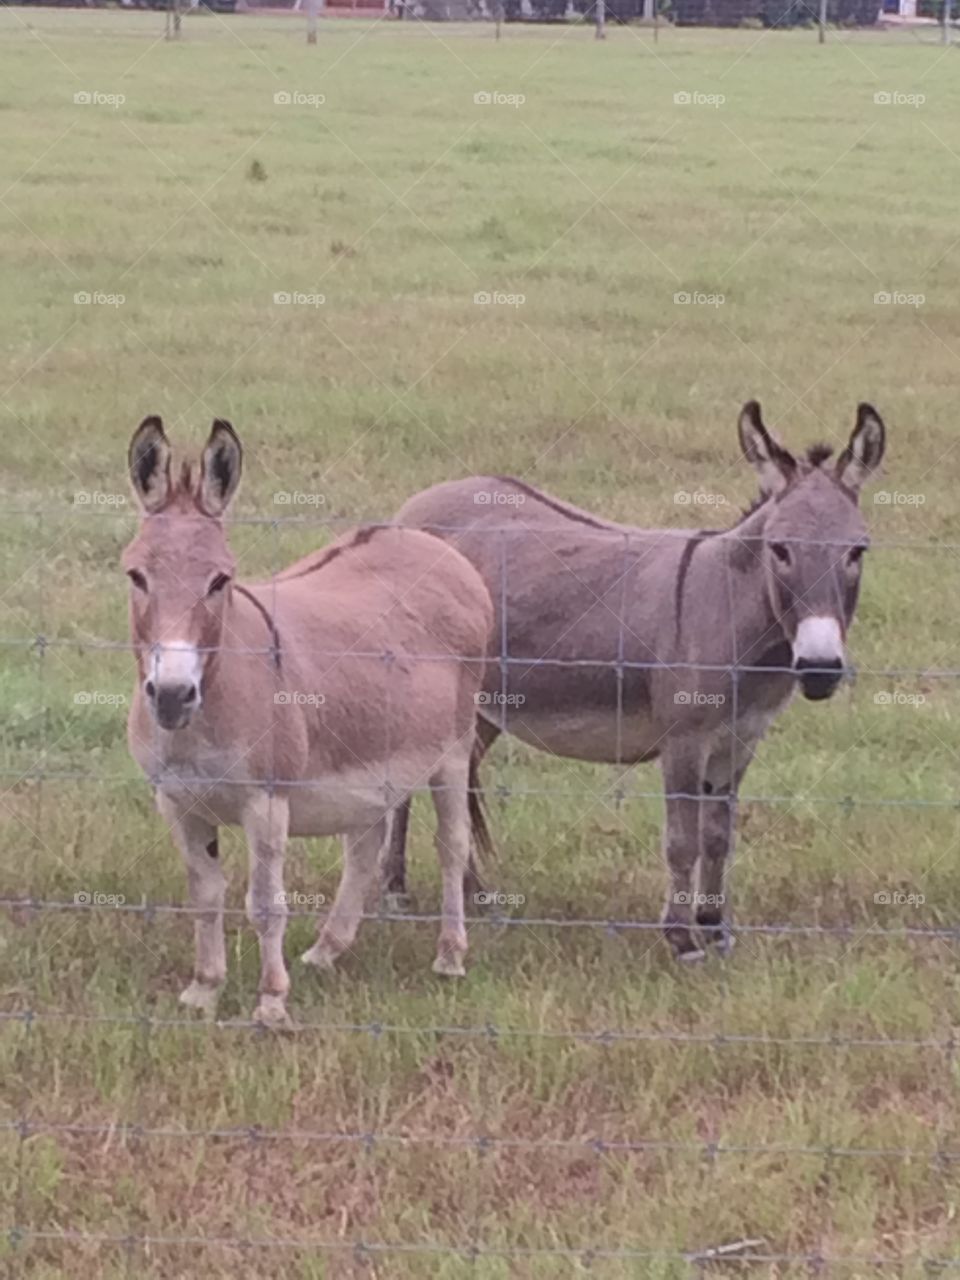 Pair of baby donkeys